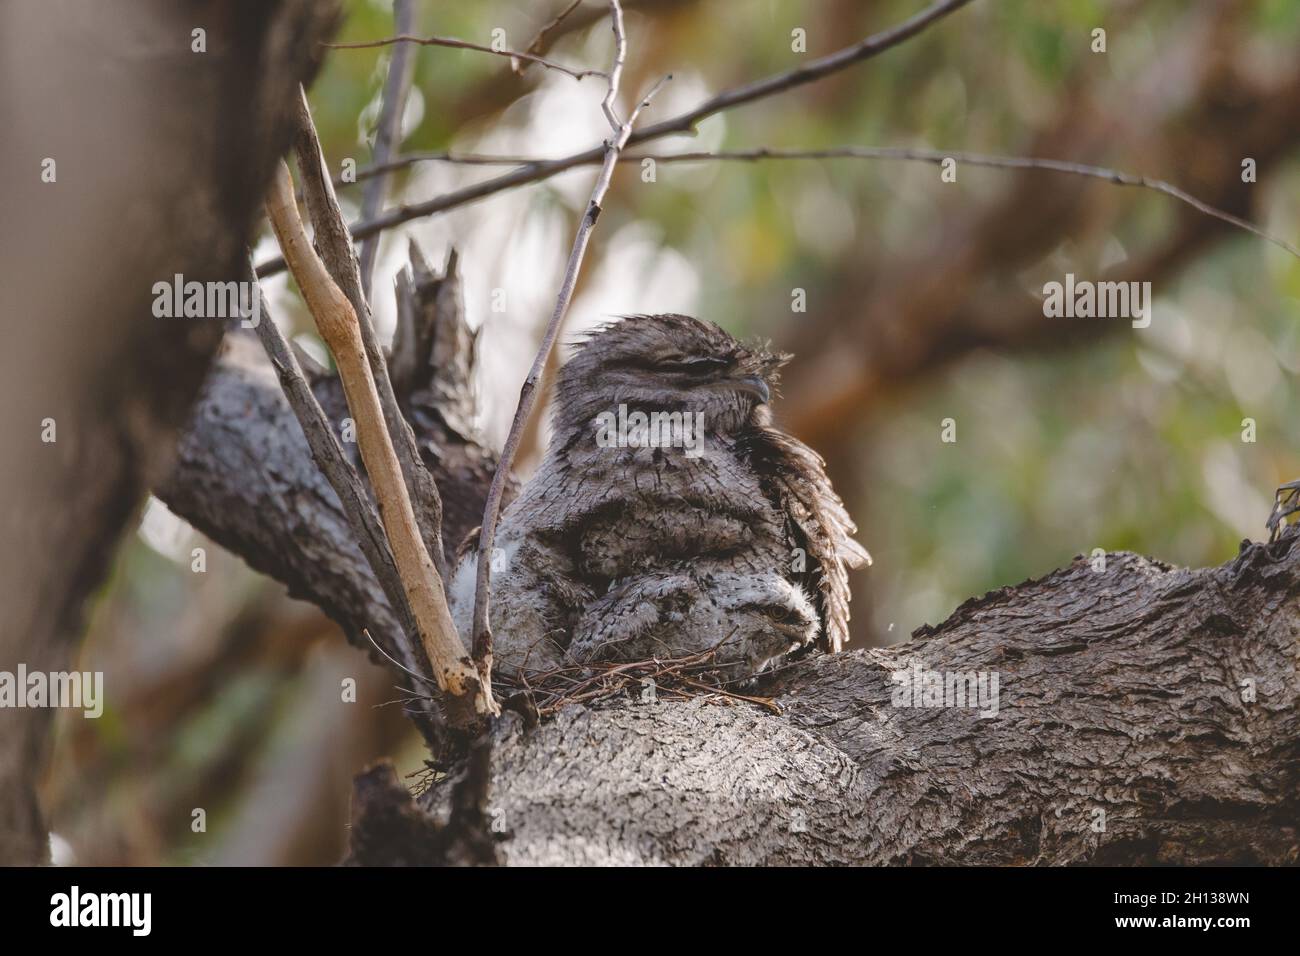 Un bébé tireur de grenouille de Tawny niché à côté de son parent dans un nid d'arbre fourchette. Banque D'Images